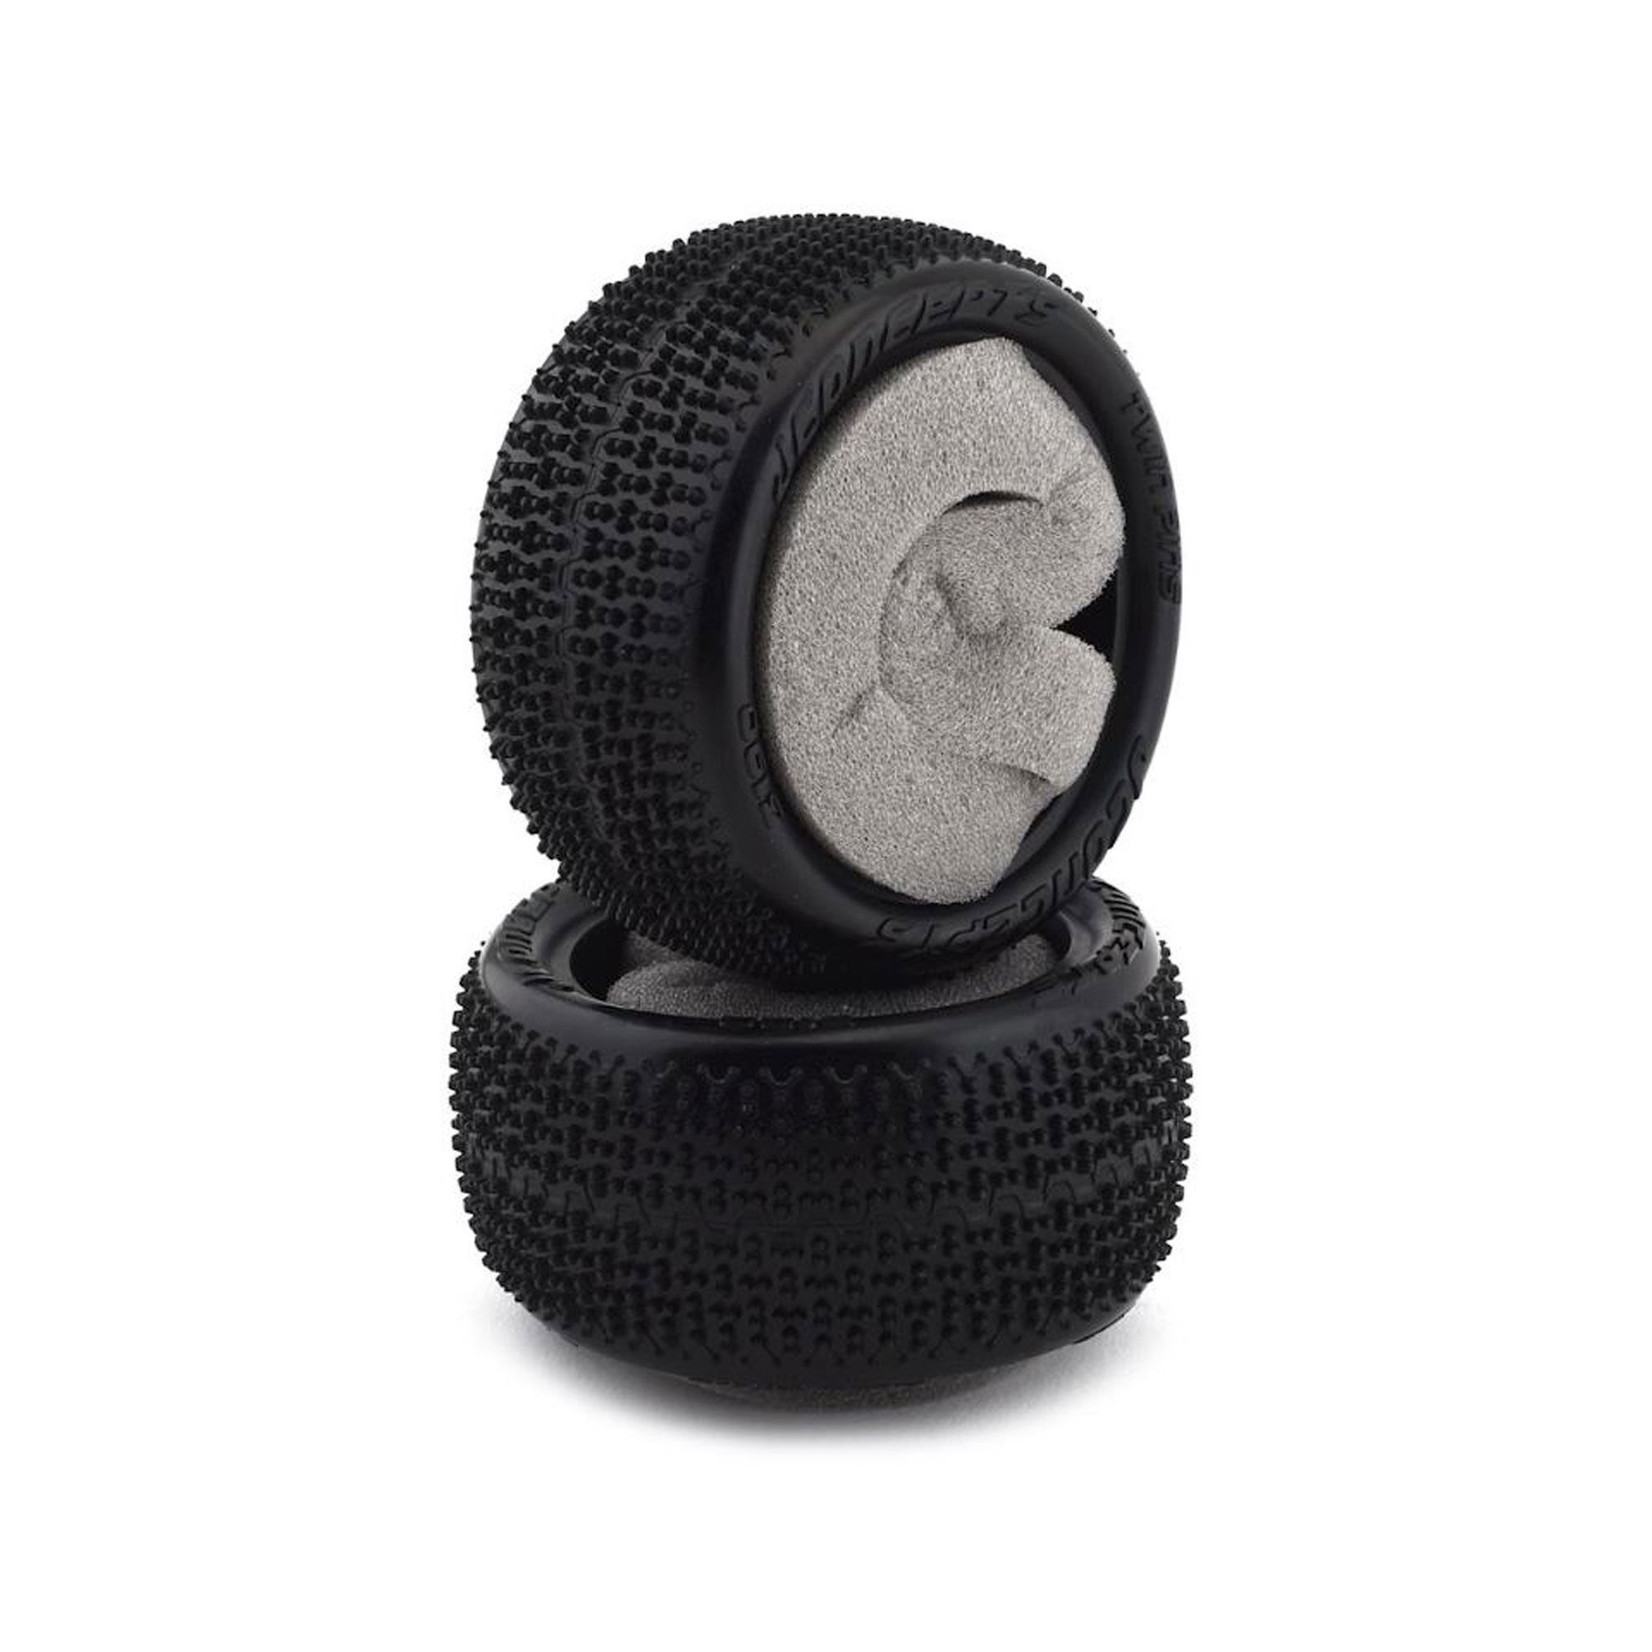 JConcepts Twin Pins 2.2" Rear Tire